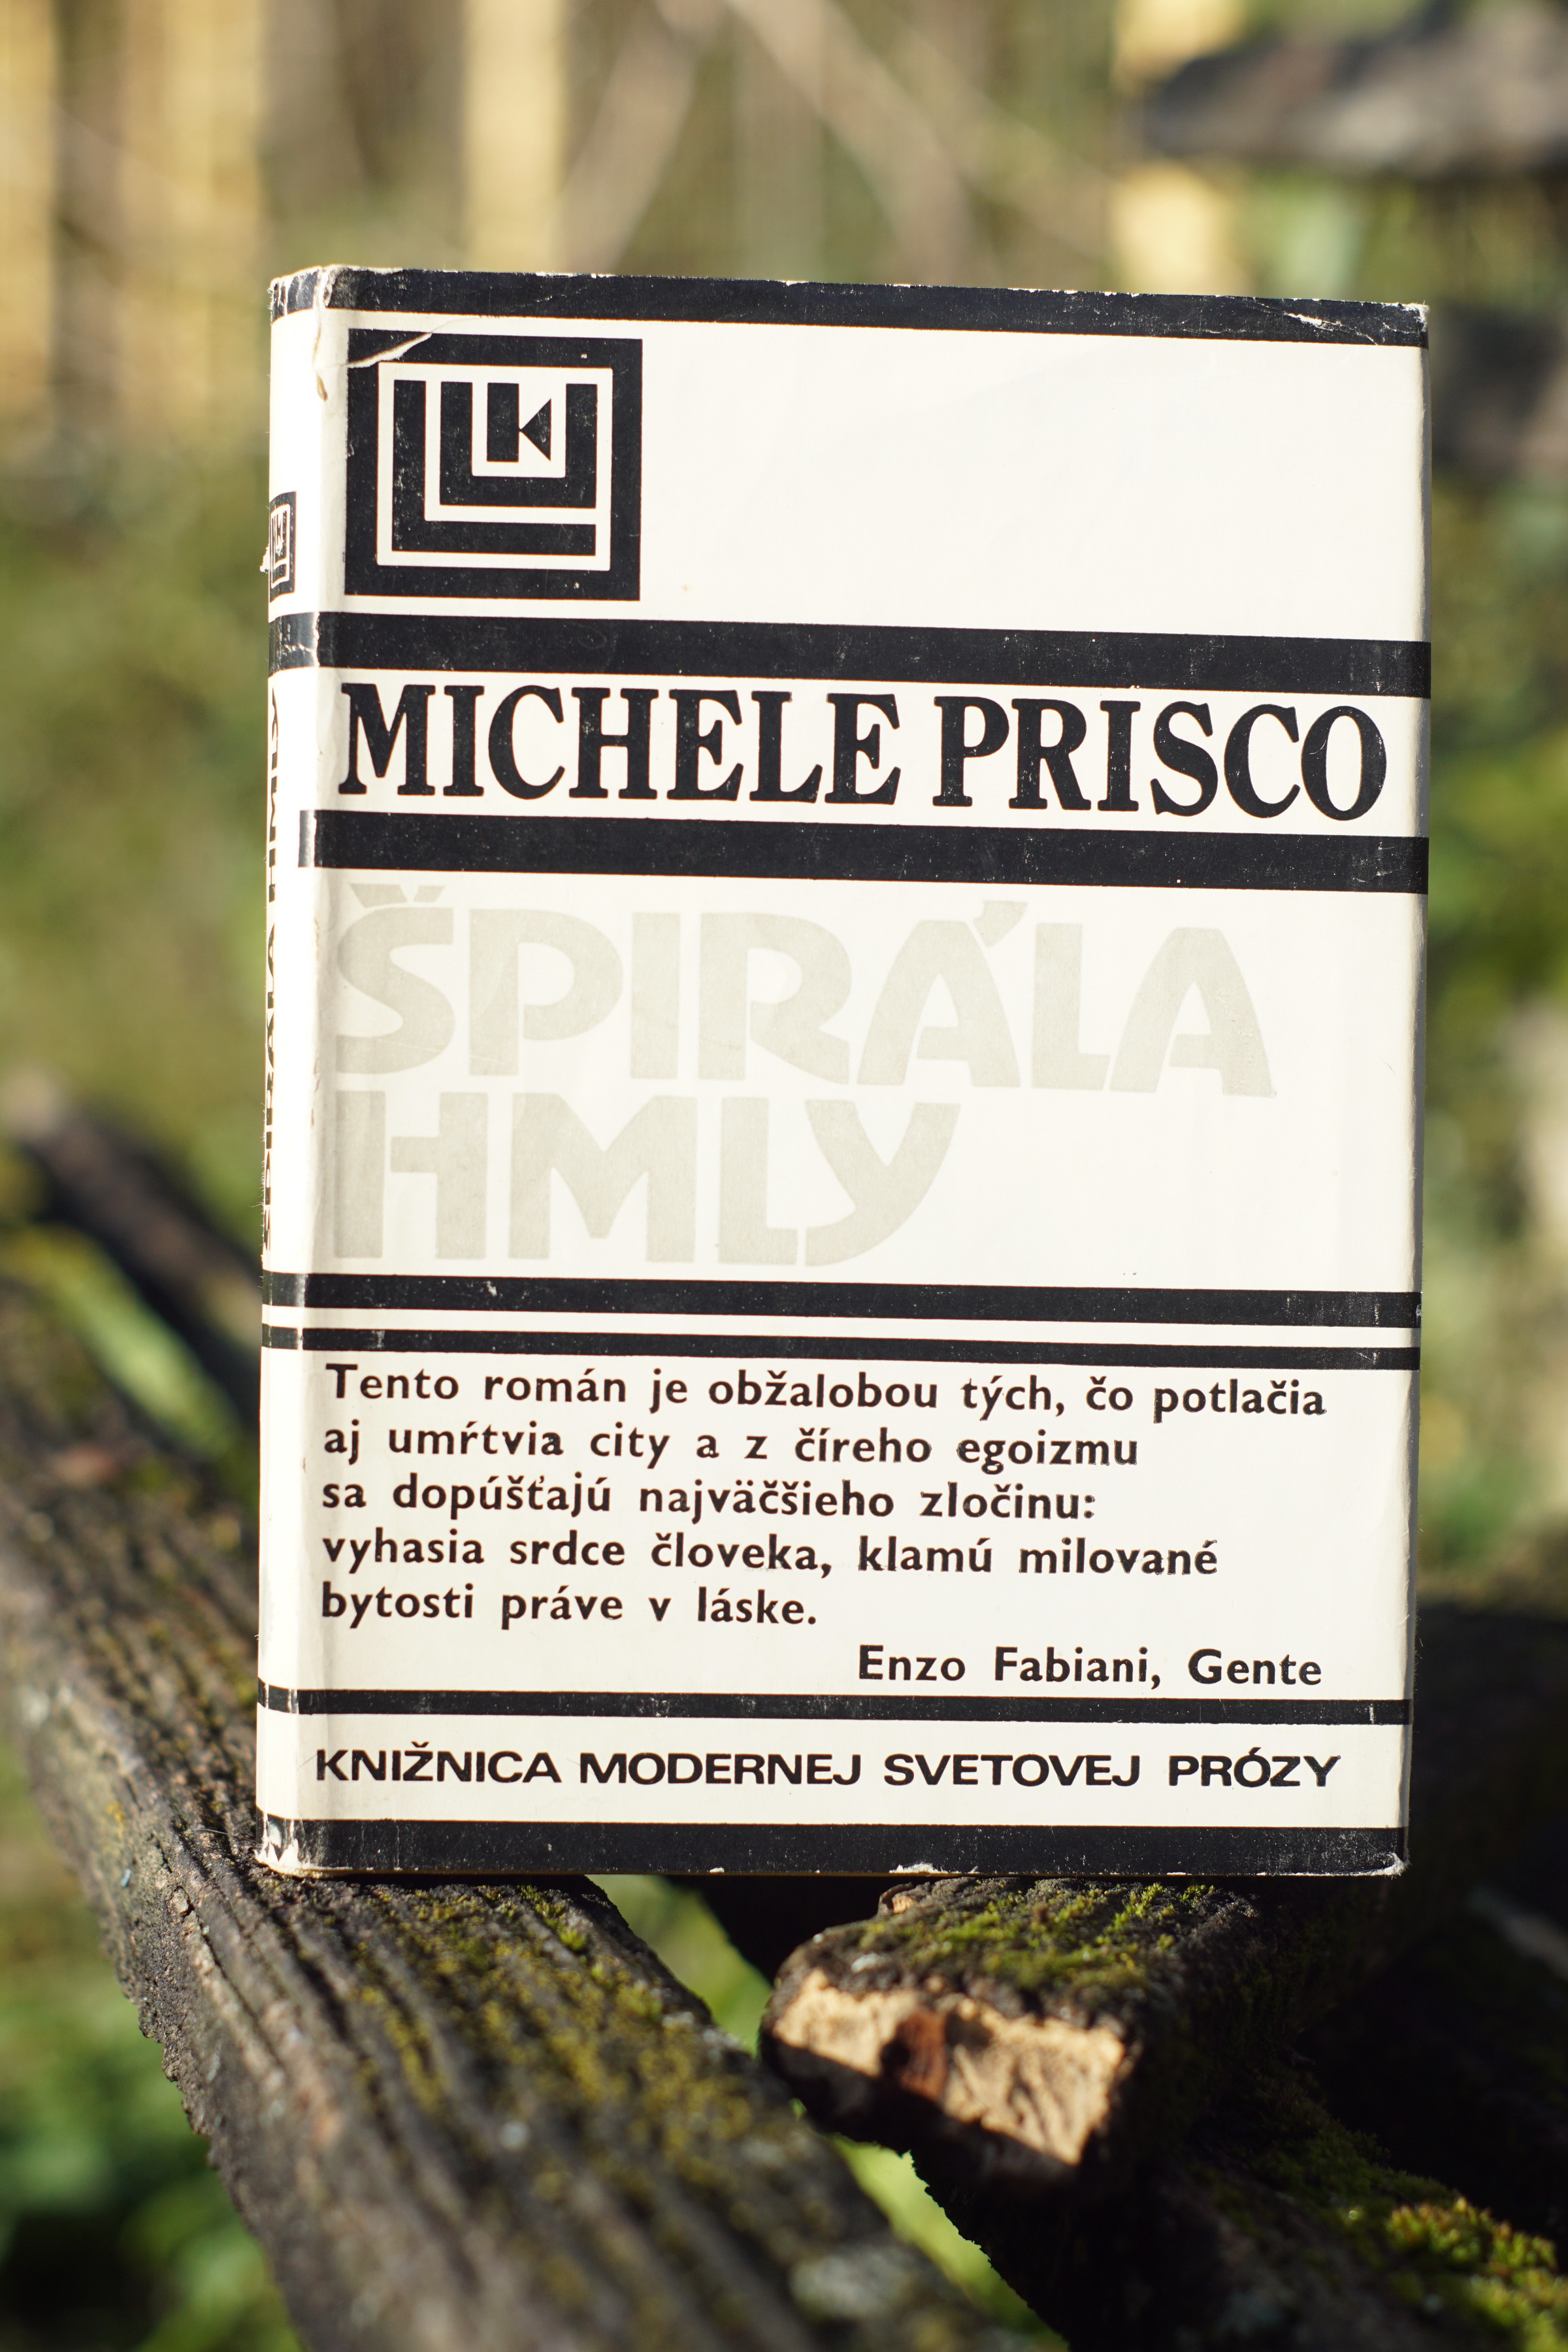 Špirála hmly Michele Prisco